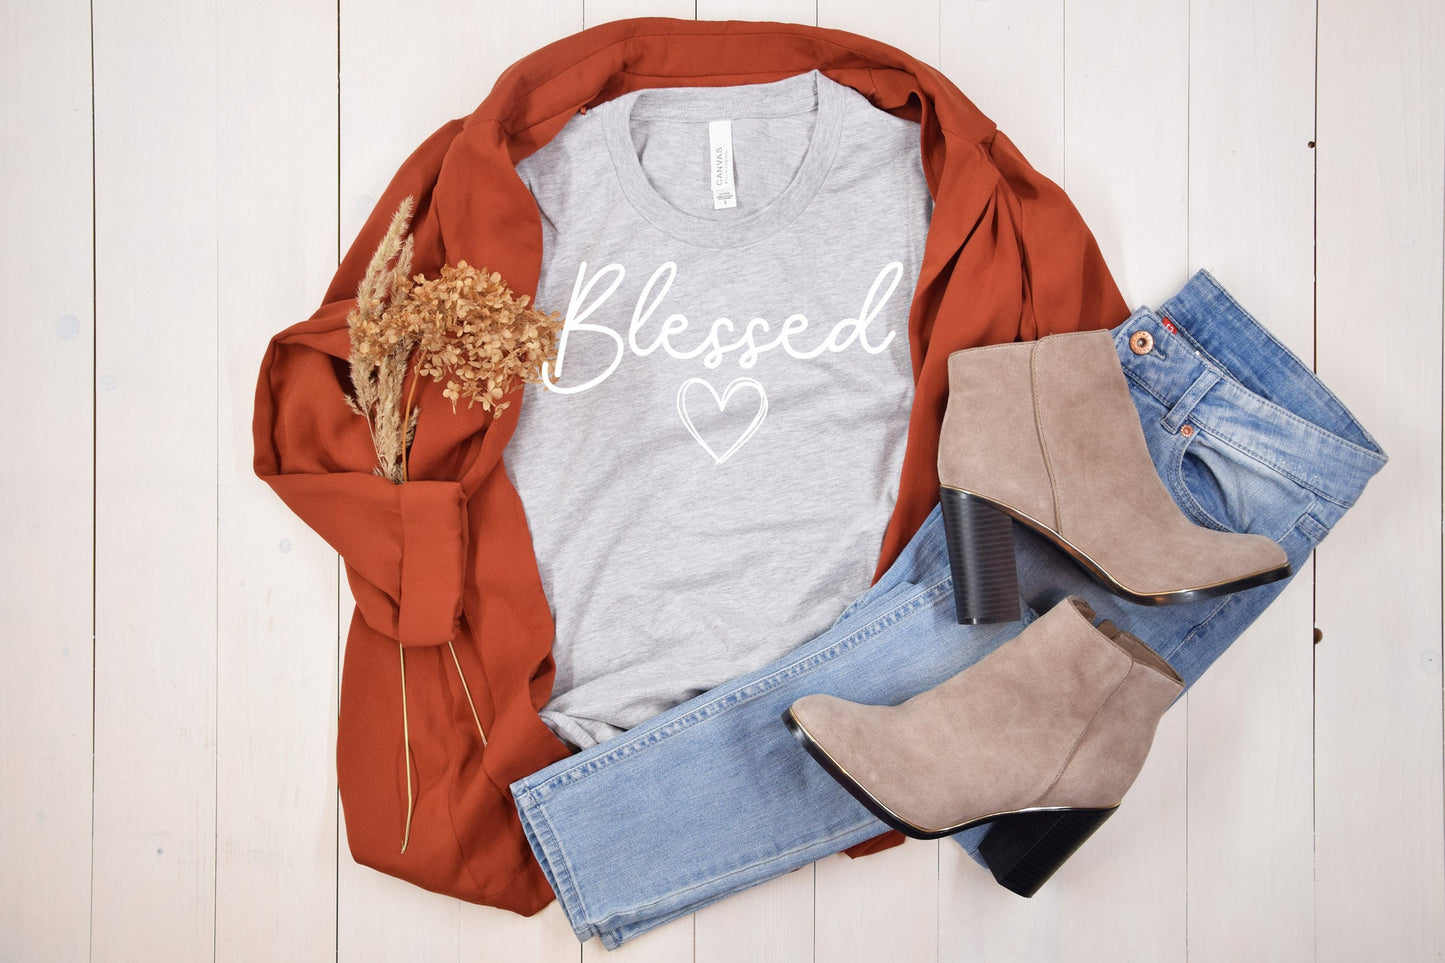 Blessed, Blessed Shirt, Cute Blessed Heart Shirt Motivational Shirt, Inspirational Shirt, Fall Shirt, Thanksgiving Shirt, Women's Shirt